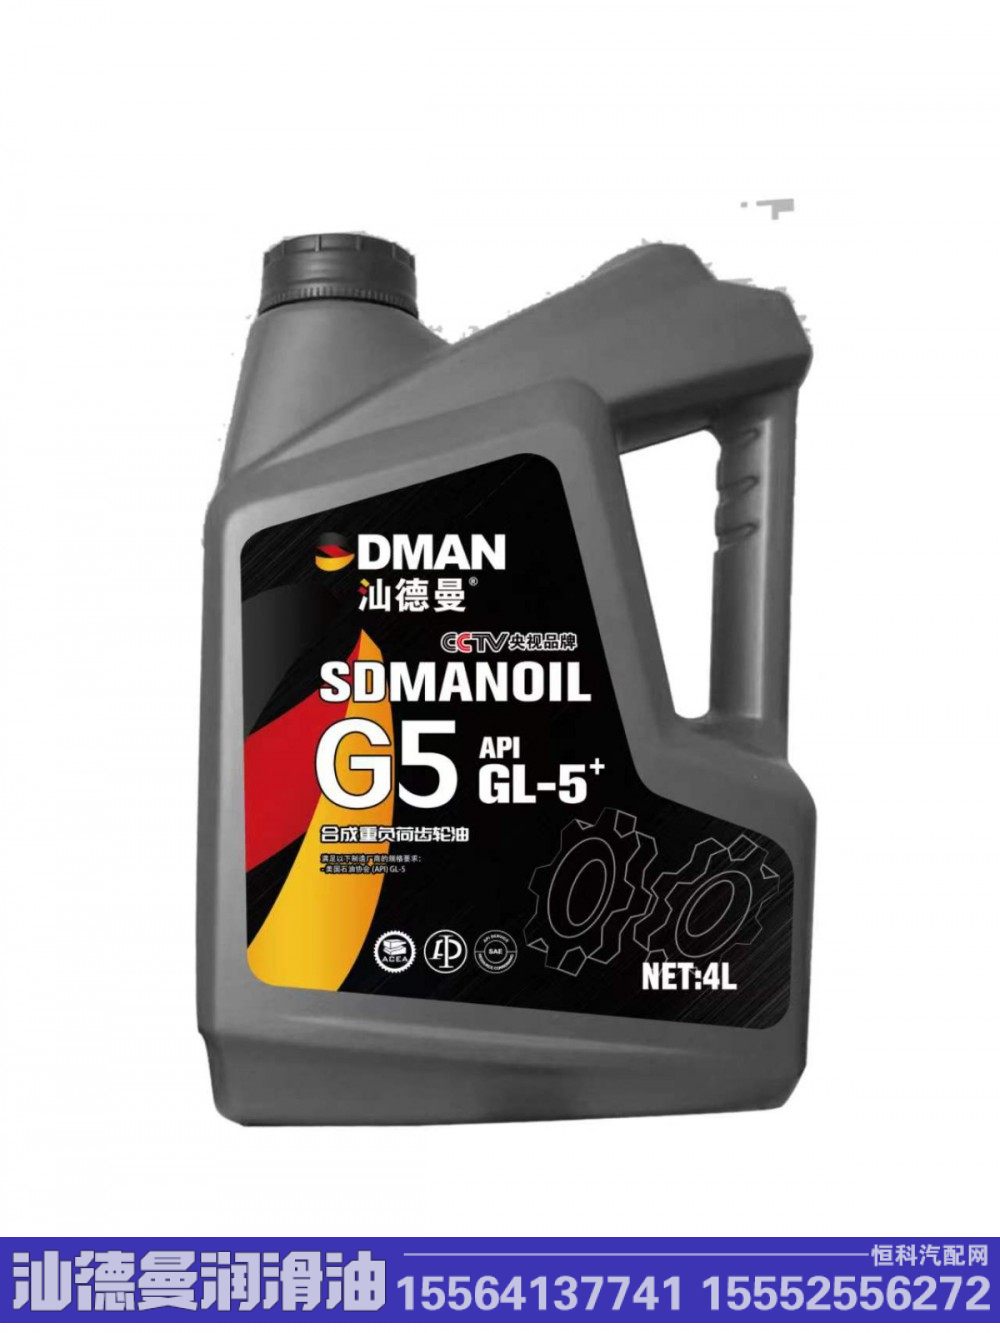 汕德曼G5合成合成重负荷齿轮油GL-5 4升/